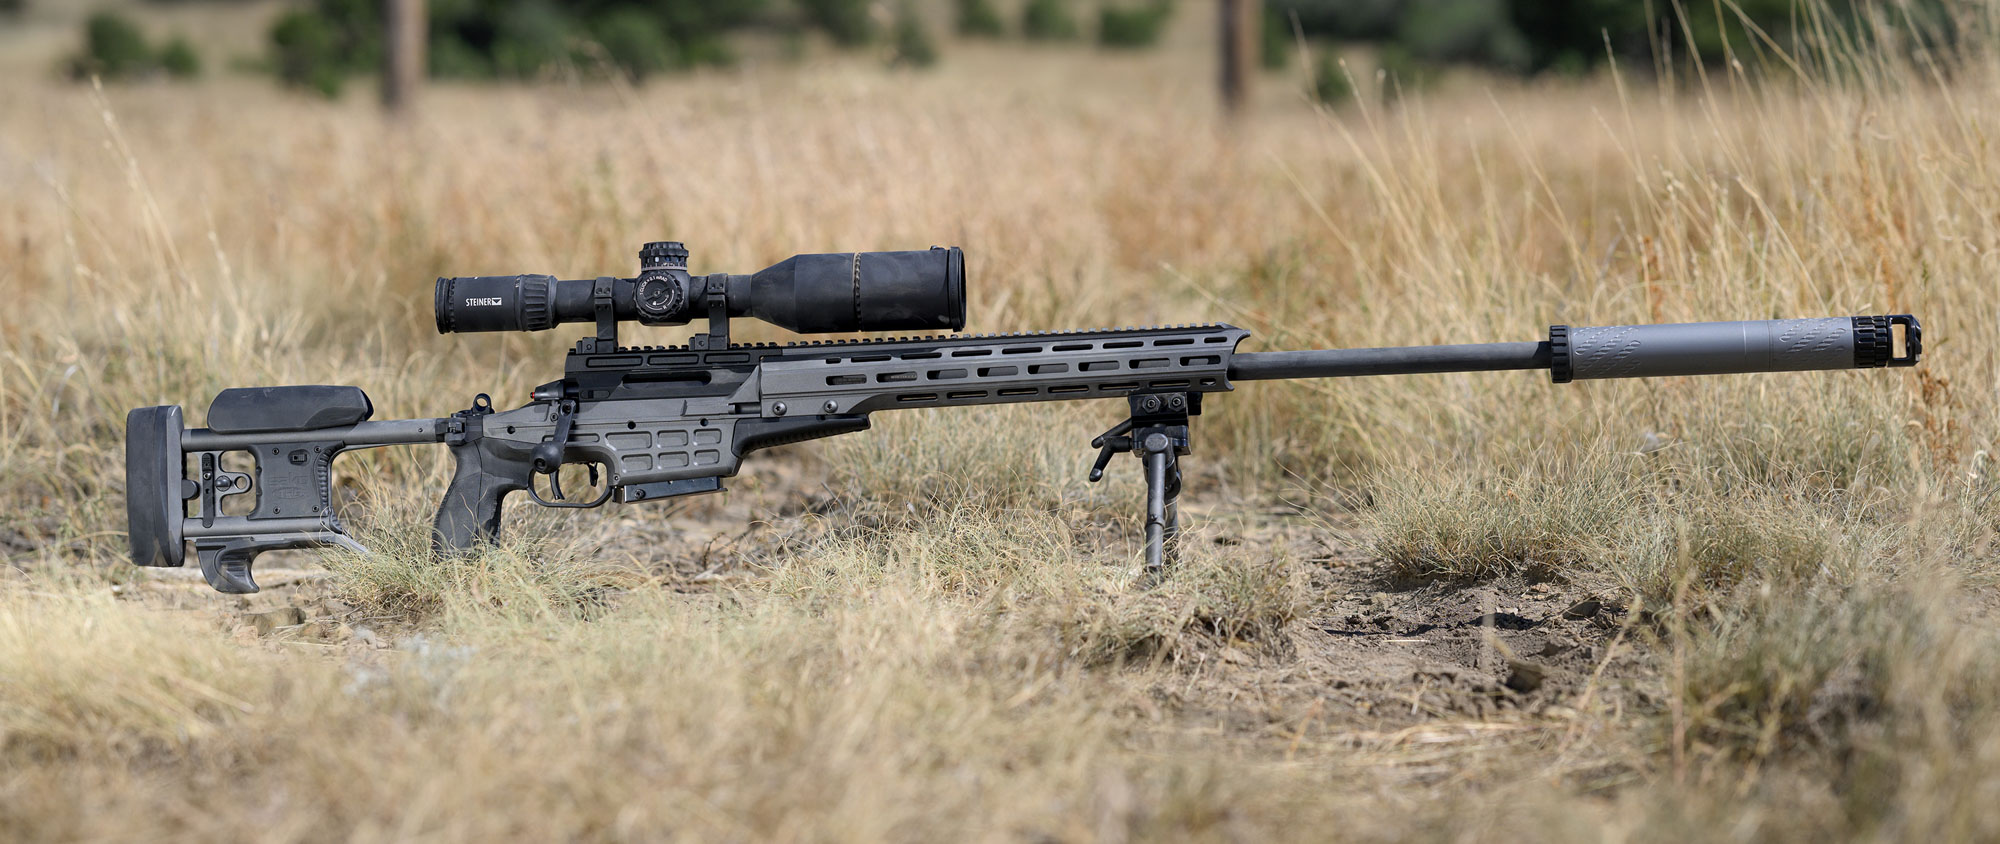 A best sniper rifle in a field